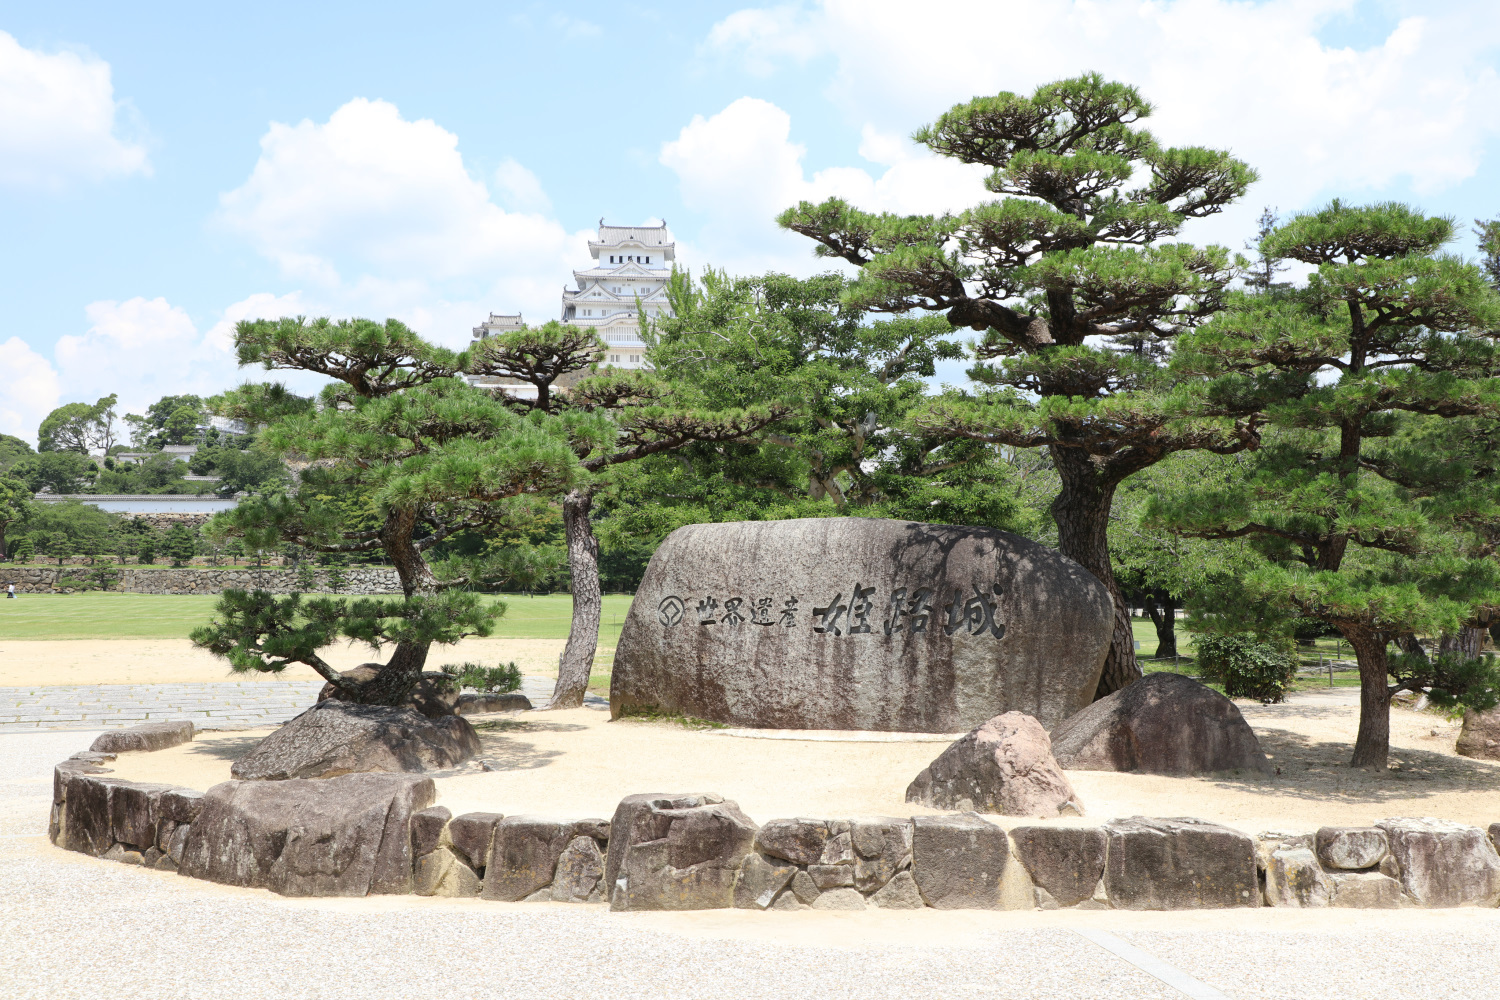 「世界遺産姫路城」の石碑と姫路城